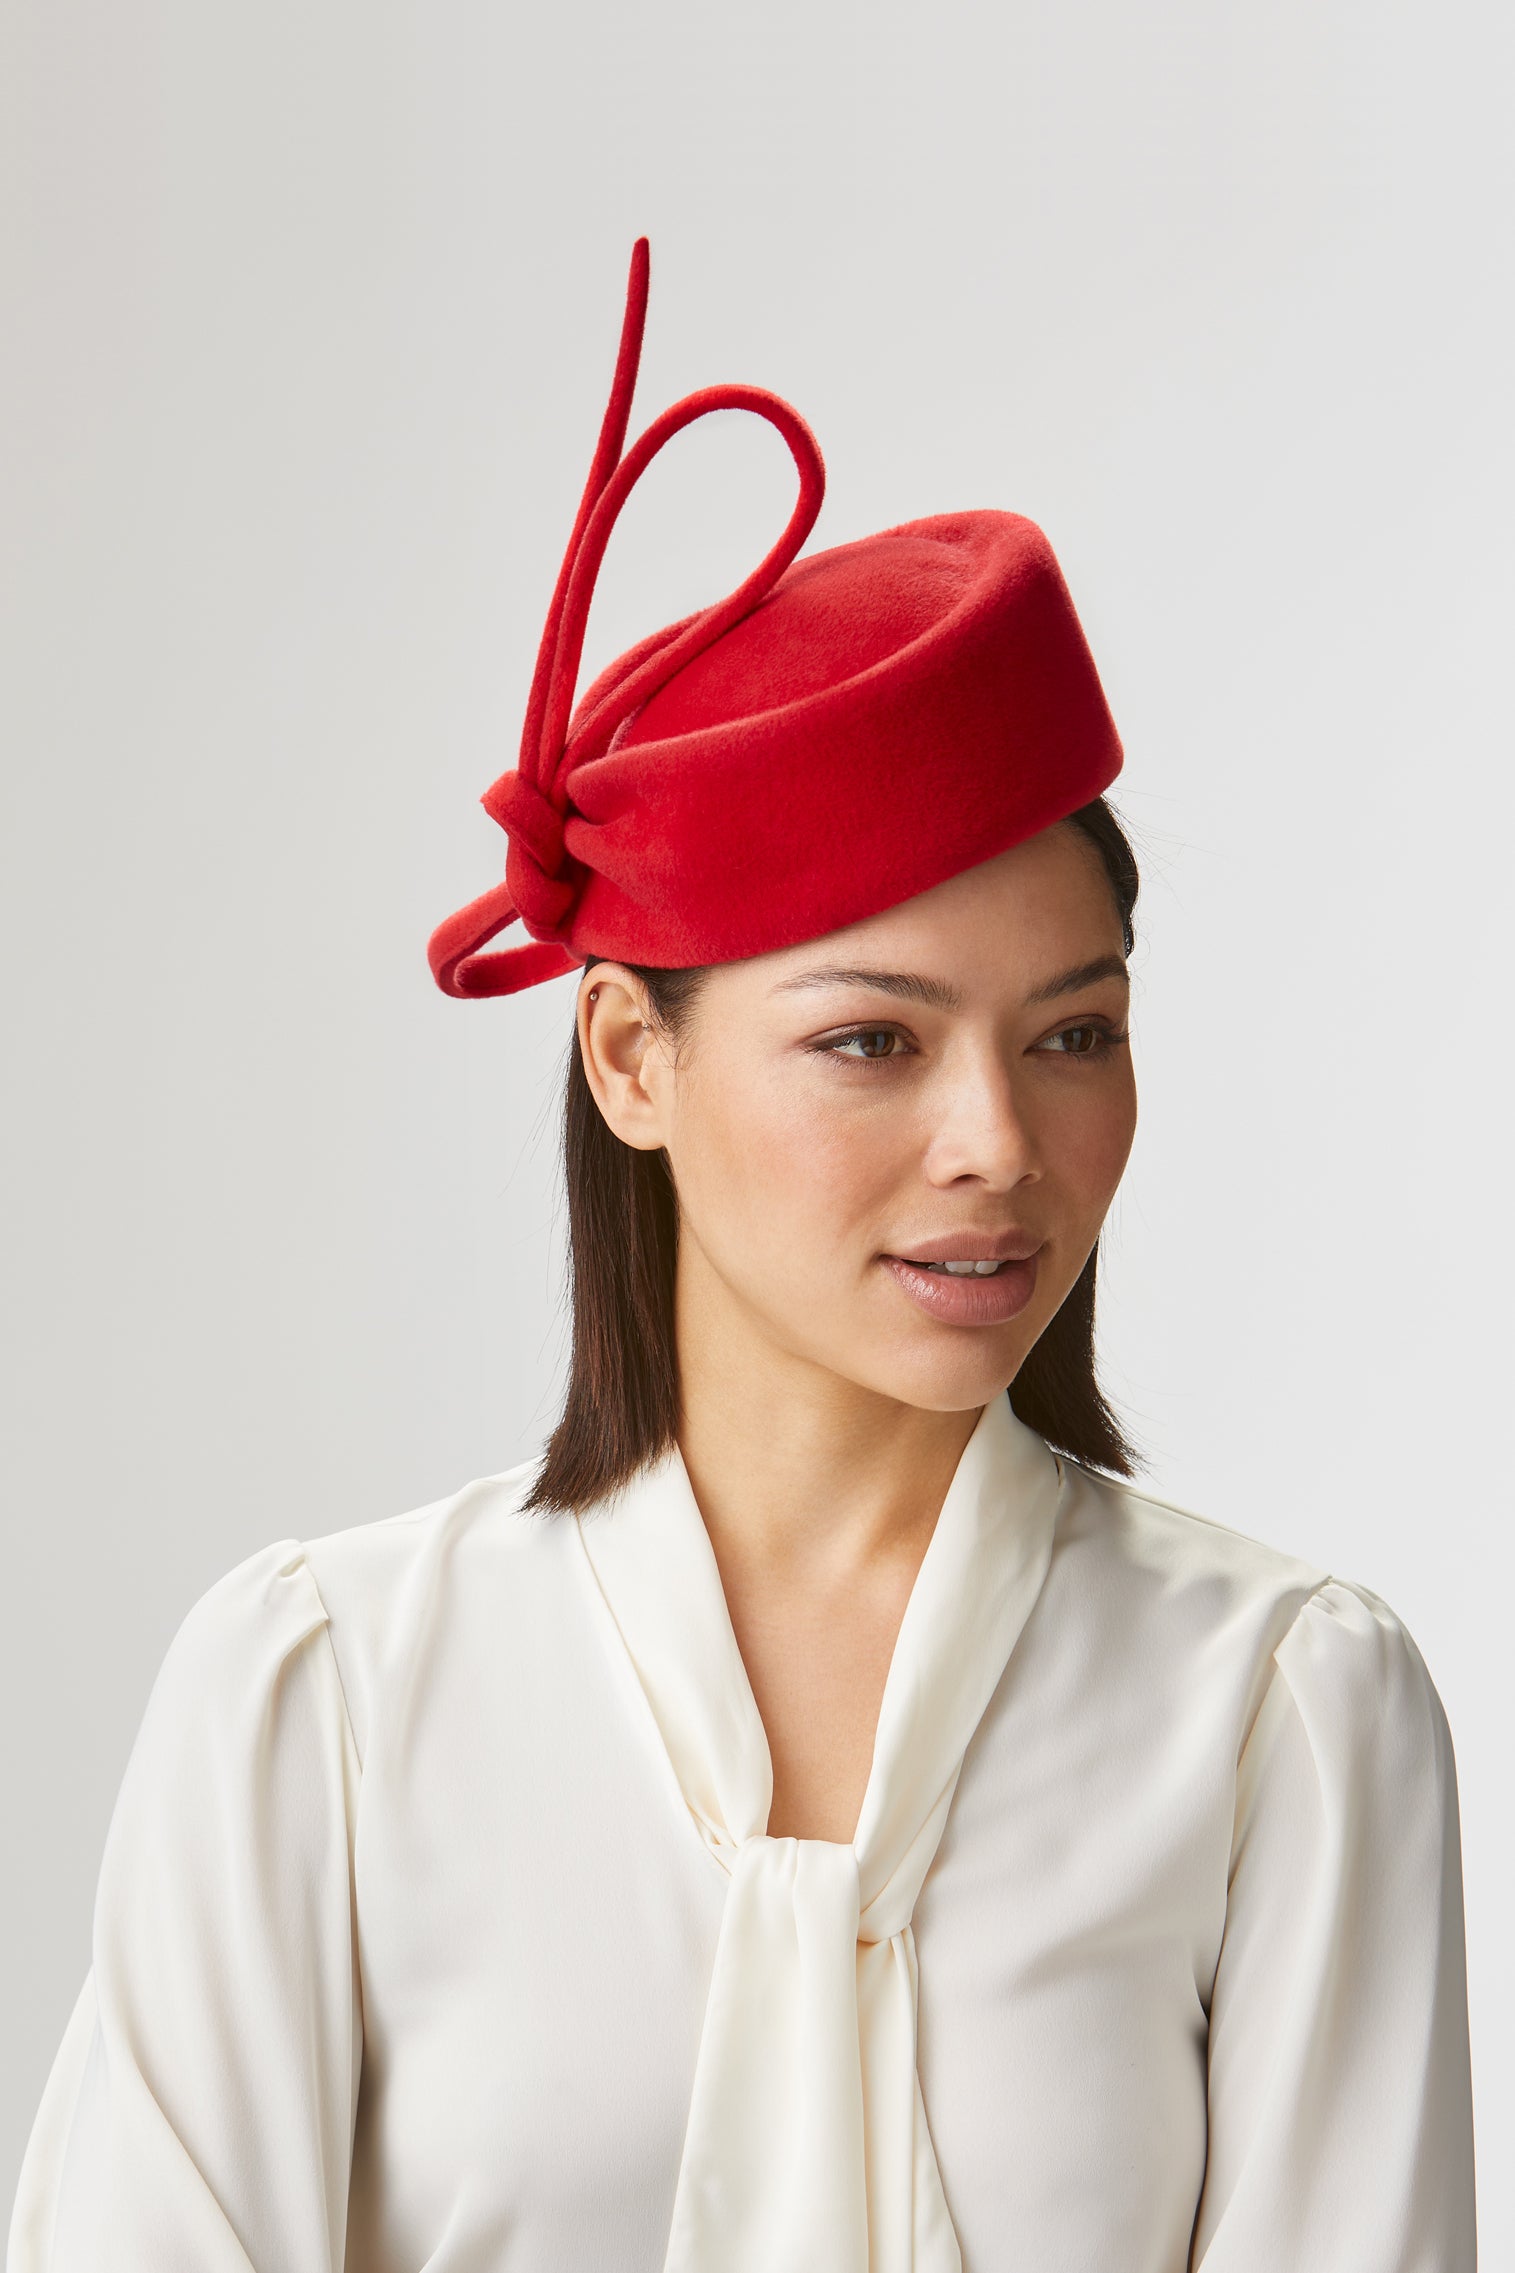 Mayfair Red Pillbox Hat - Women’s Hats - Lock & Co. Hatters London UK